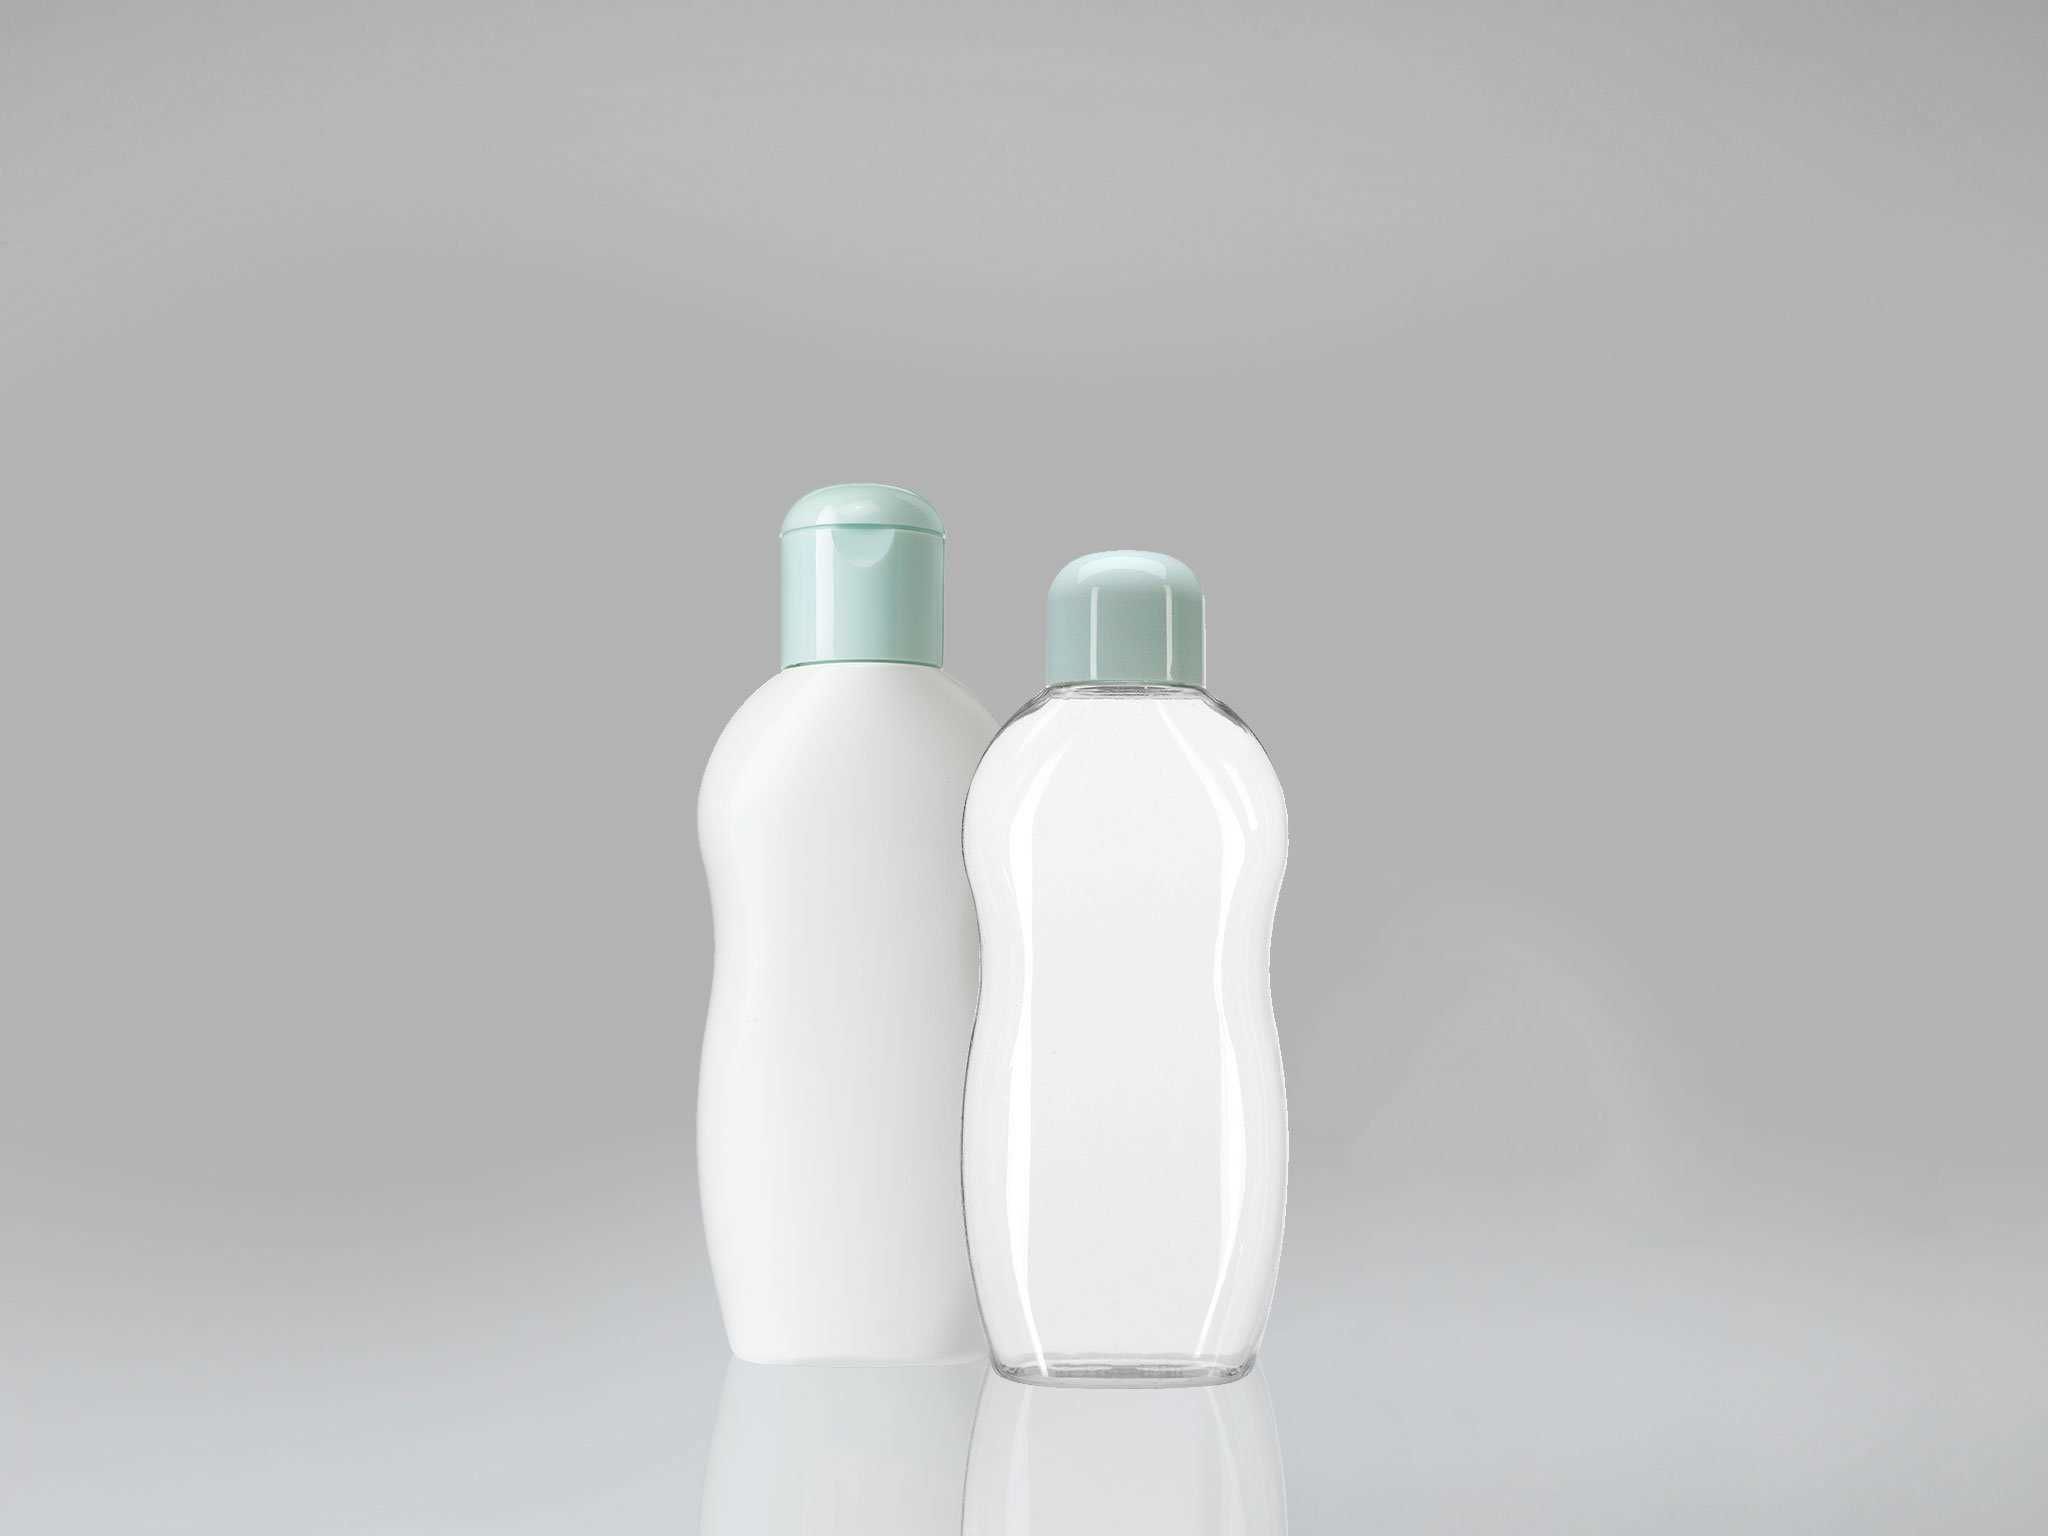 plastik şişeler